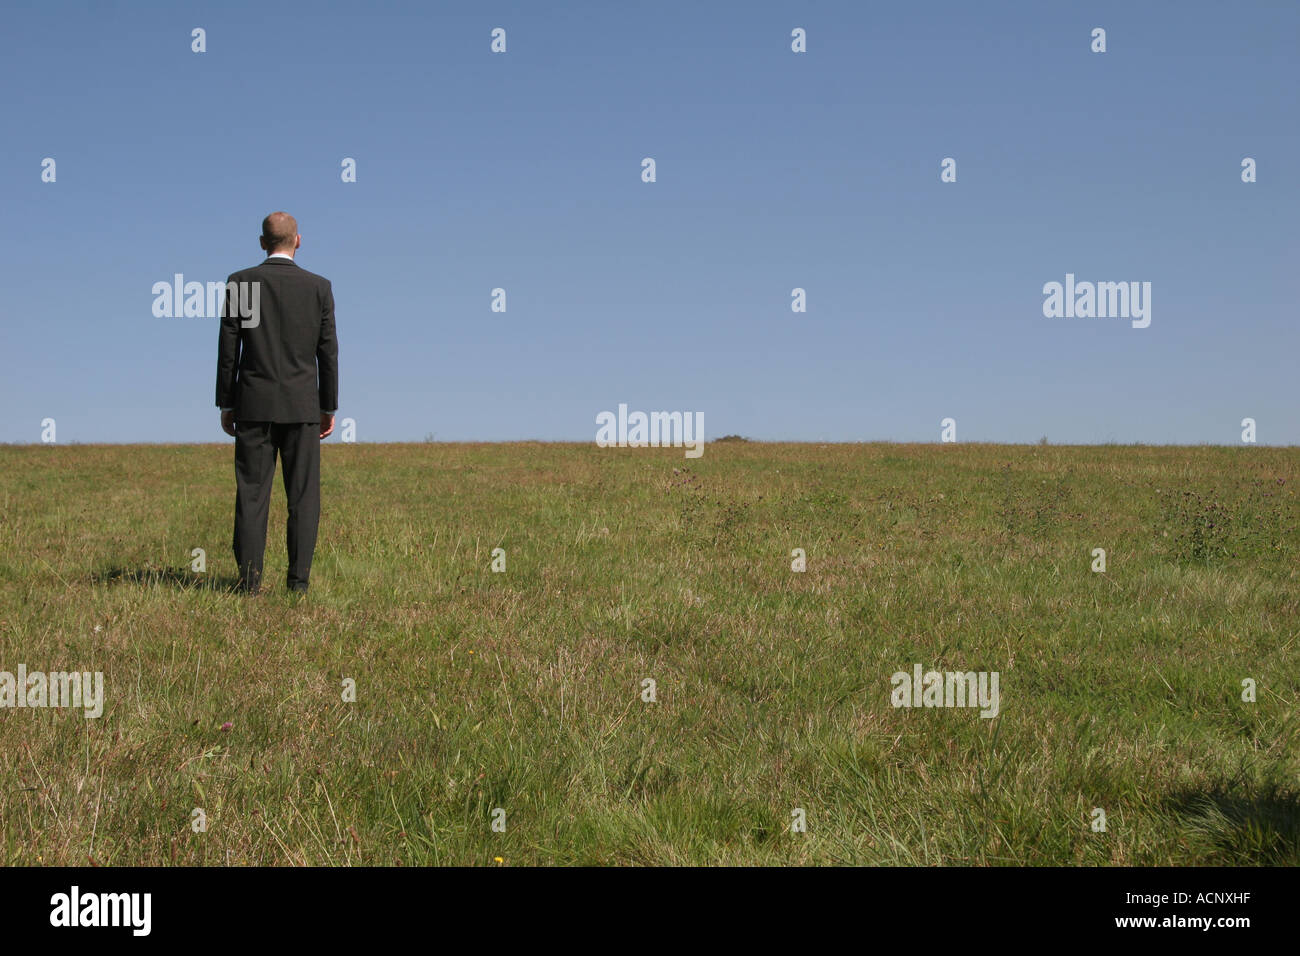 Lonley businessman on the meadow - Geschäftsmann alleine auf einer Wiese Stock Photo